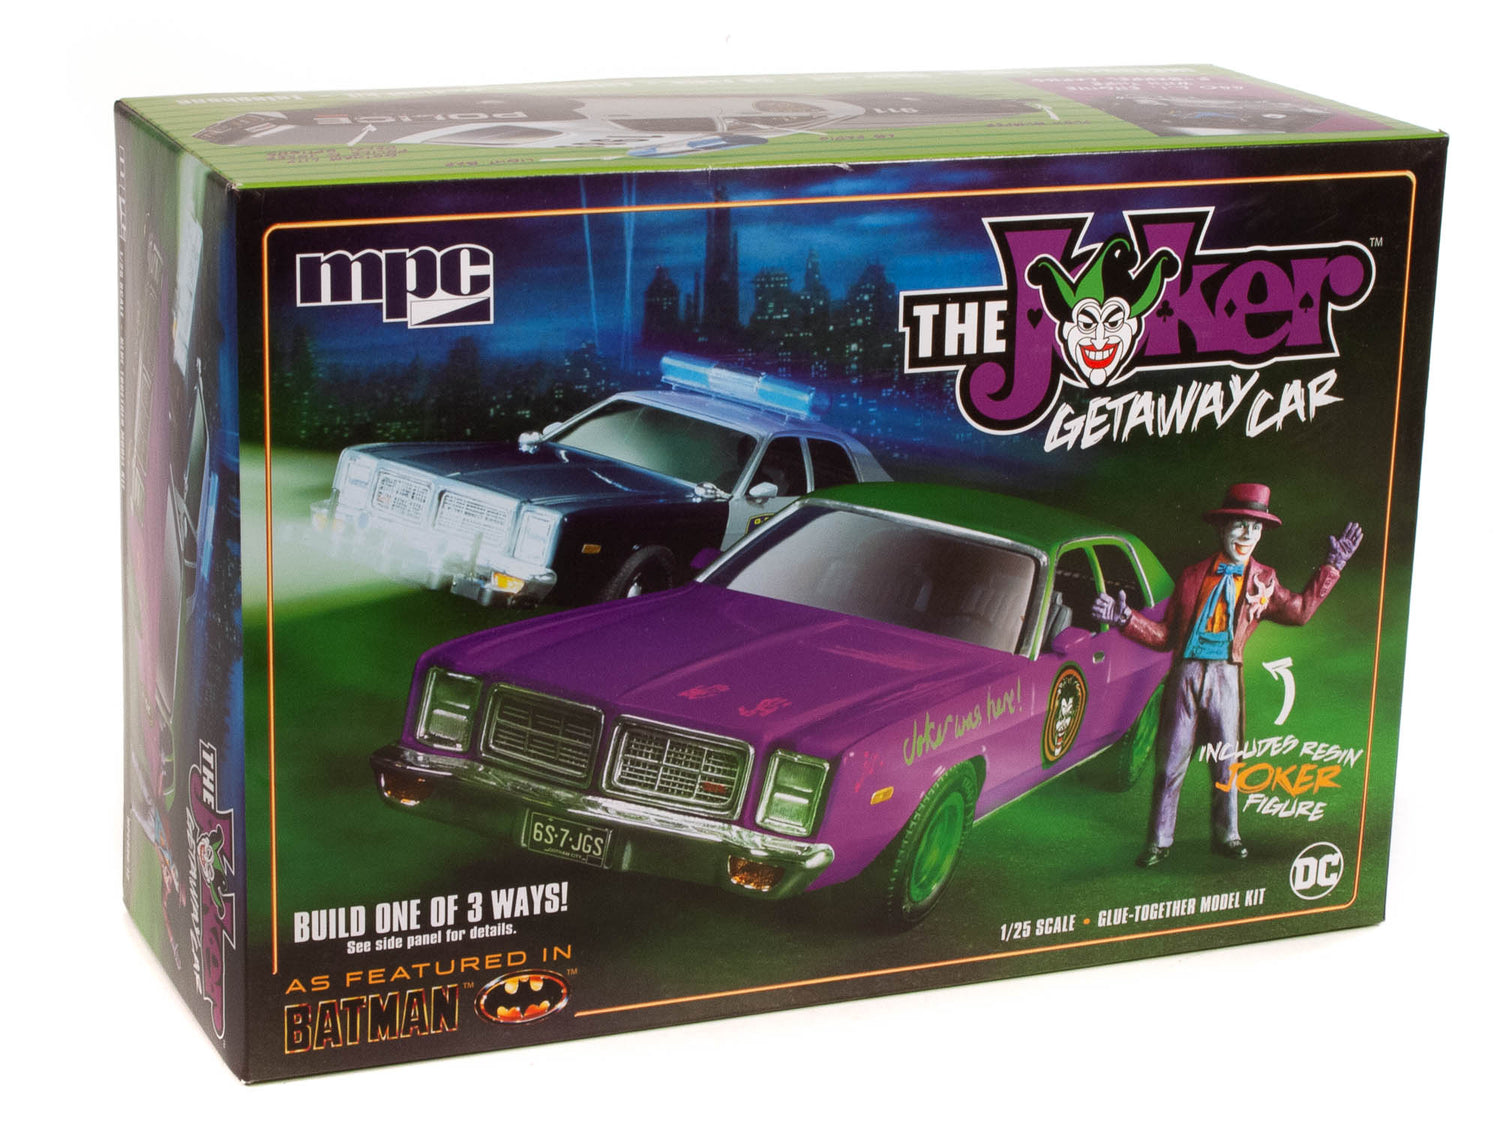 MPC Batman The Joker Getaway Car 1978 Dodge Monaco w-Joker Figure 1:25 Scale Model Kit